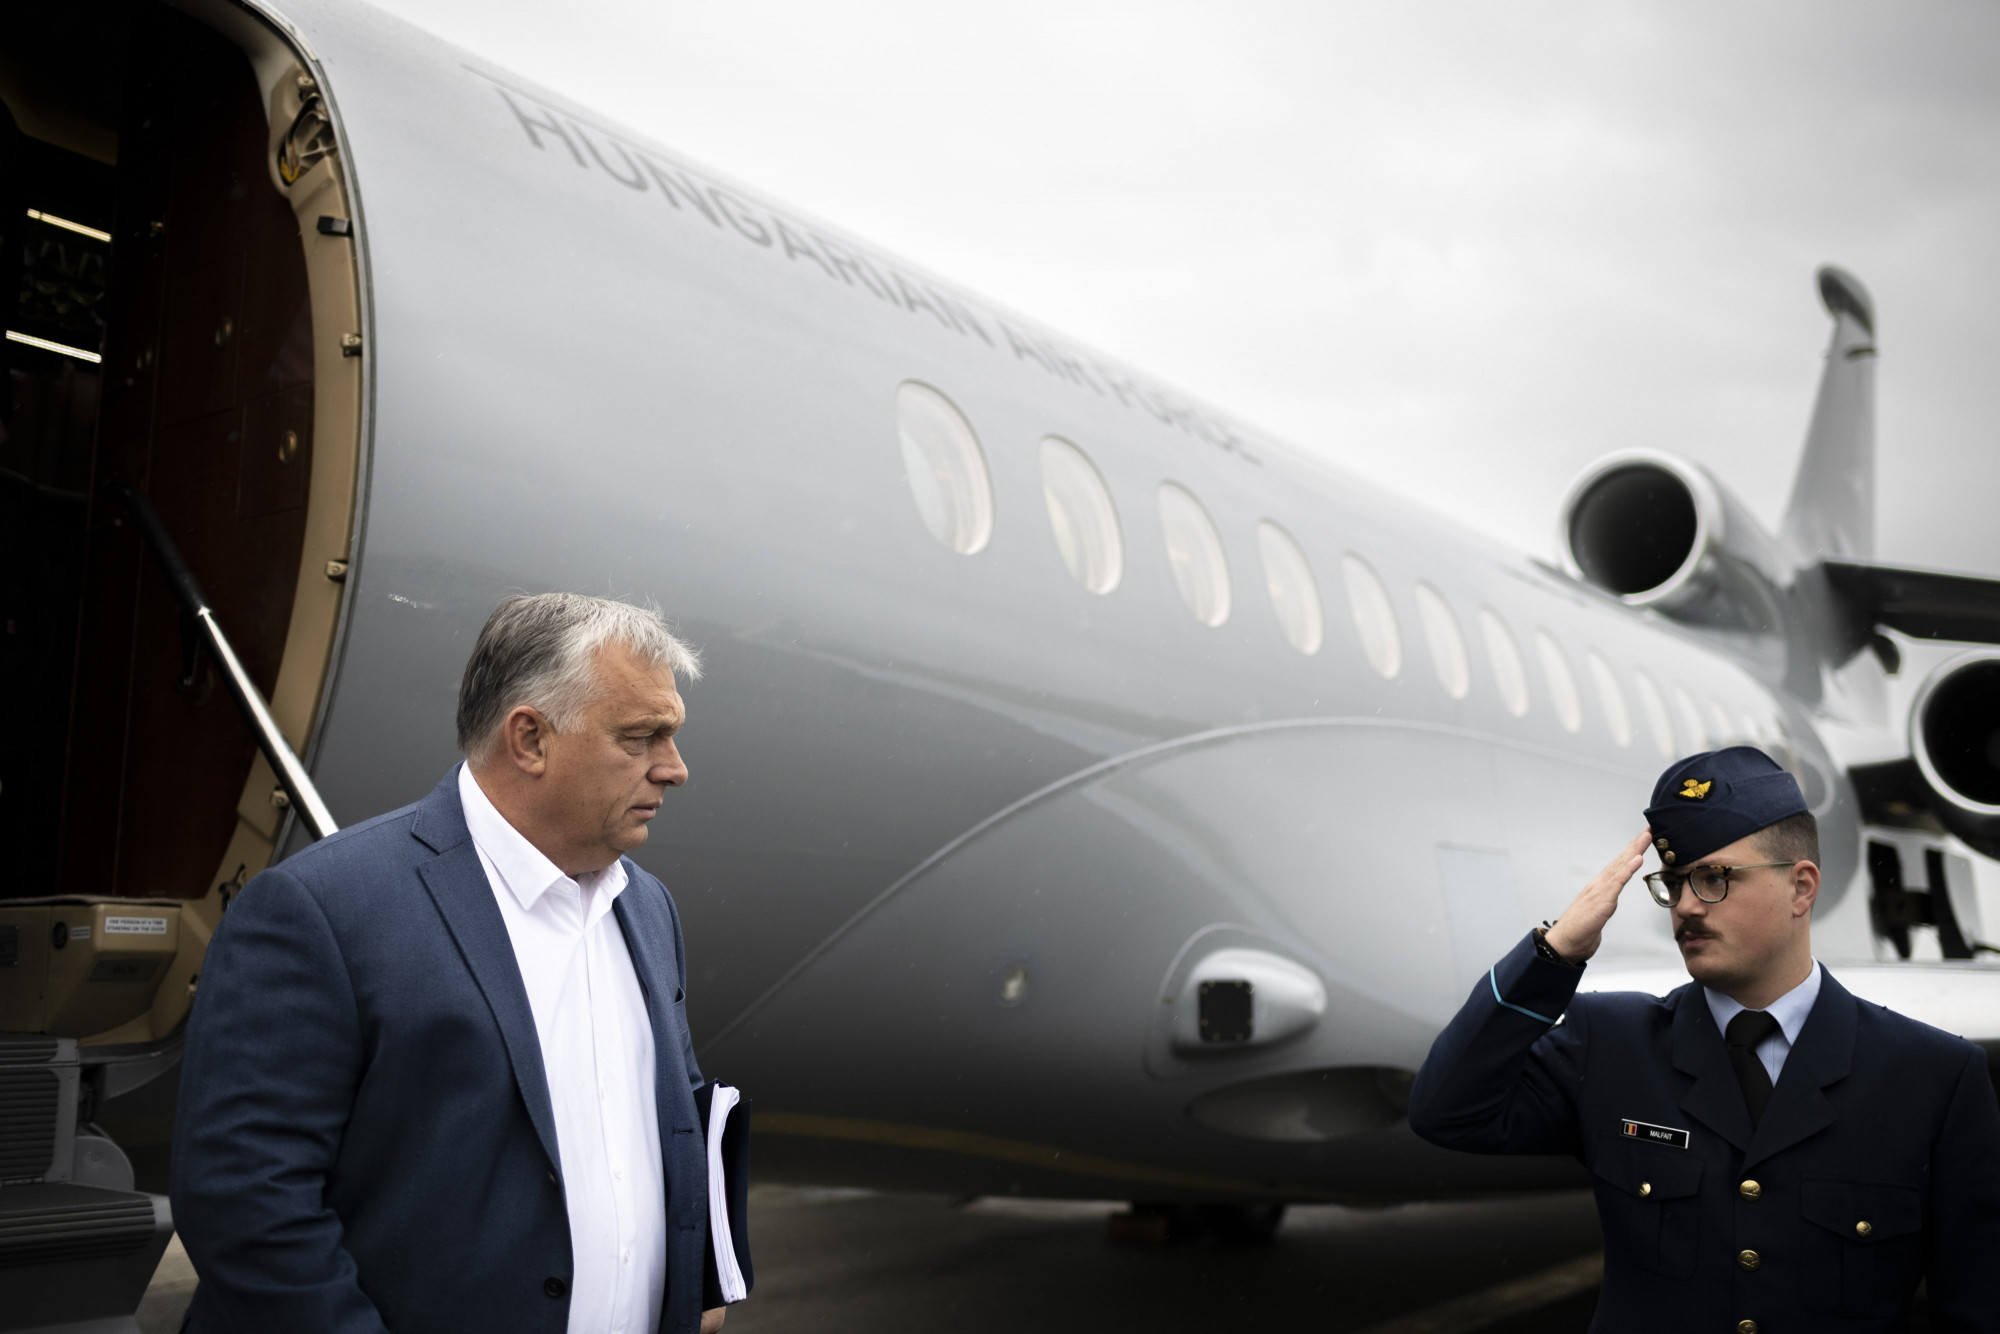 Pont akkor járt Rómában a kormányzati luxusgép, amikor Orbán és a felesége